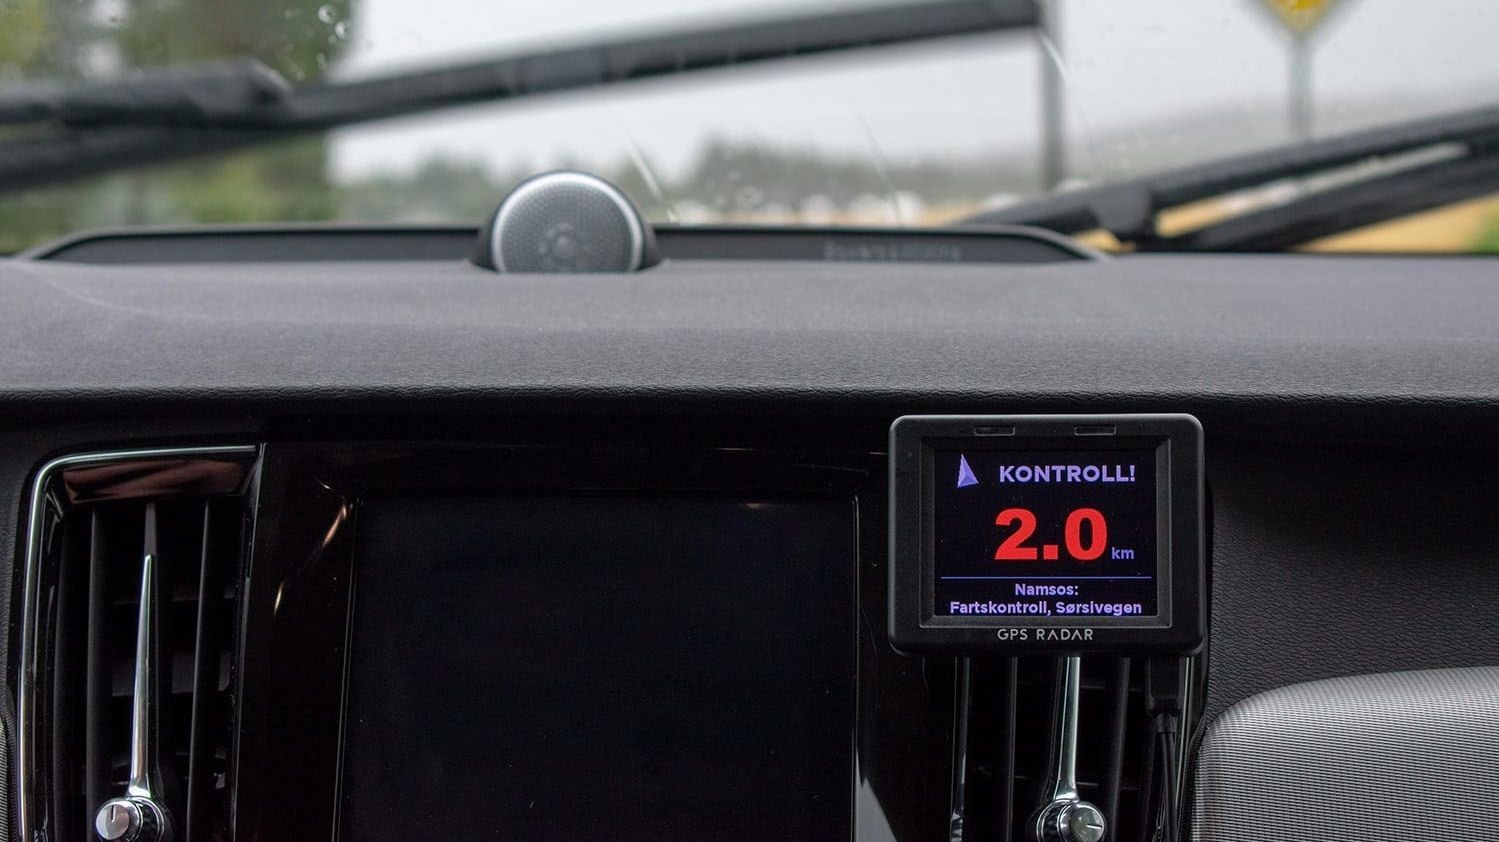 
Med denne norskutviklede gps-varsleren i bilen vet du til enhver tid om det er kontroll på strekningen du kjører. Genialt hvis du skal på ferie i Norge i sommer.
